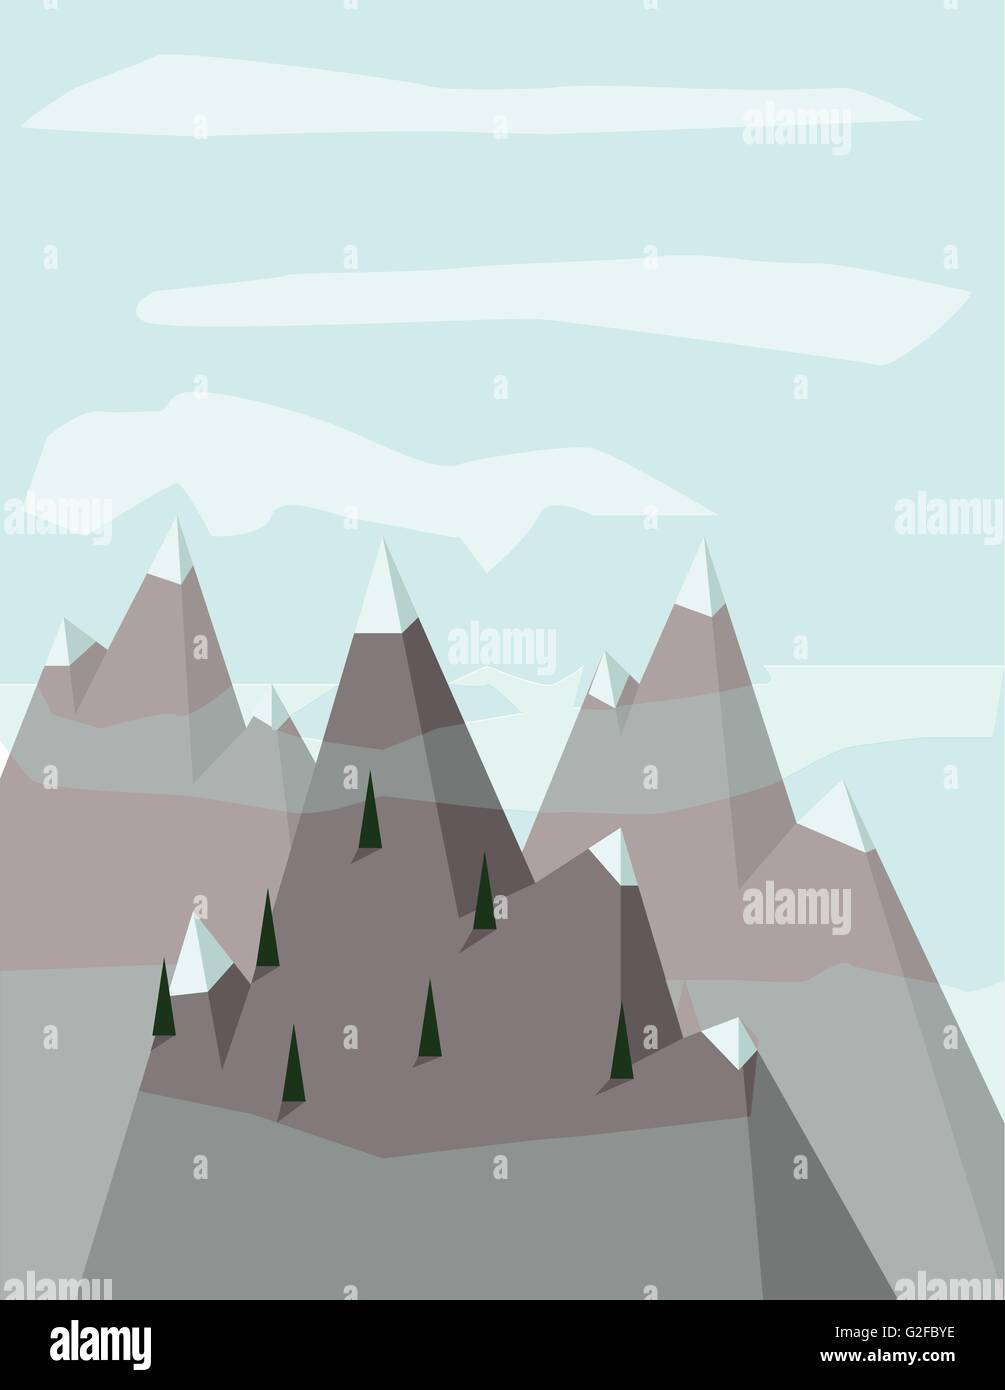 Paesaggio Astratto con pino argento treeson montagne con la neve sulla sommità, su un fondo azzurro con nuvole bianche. Digital Illustrazione Vettoriale